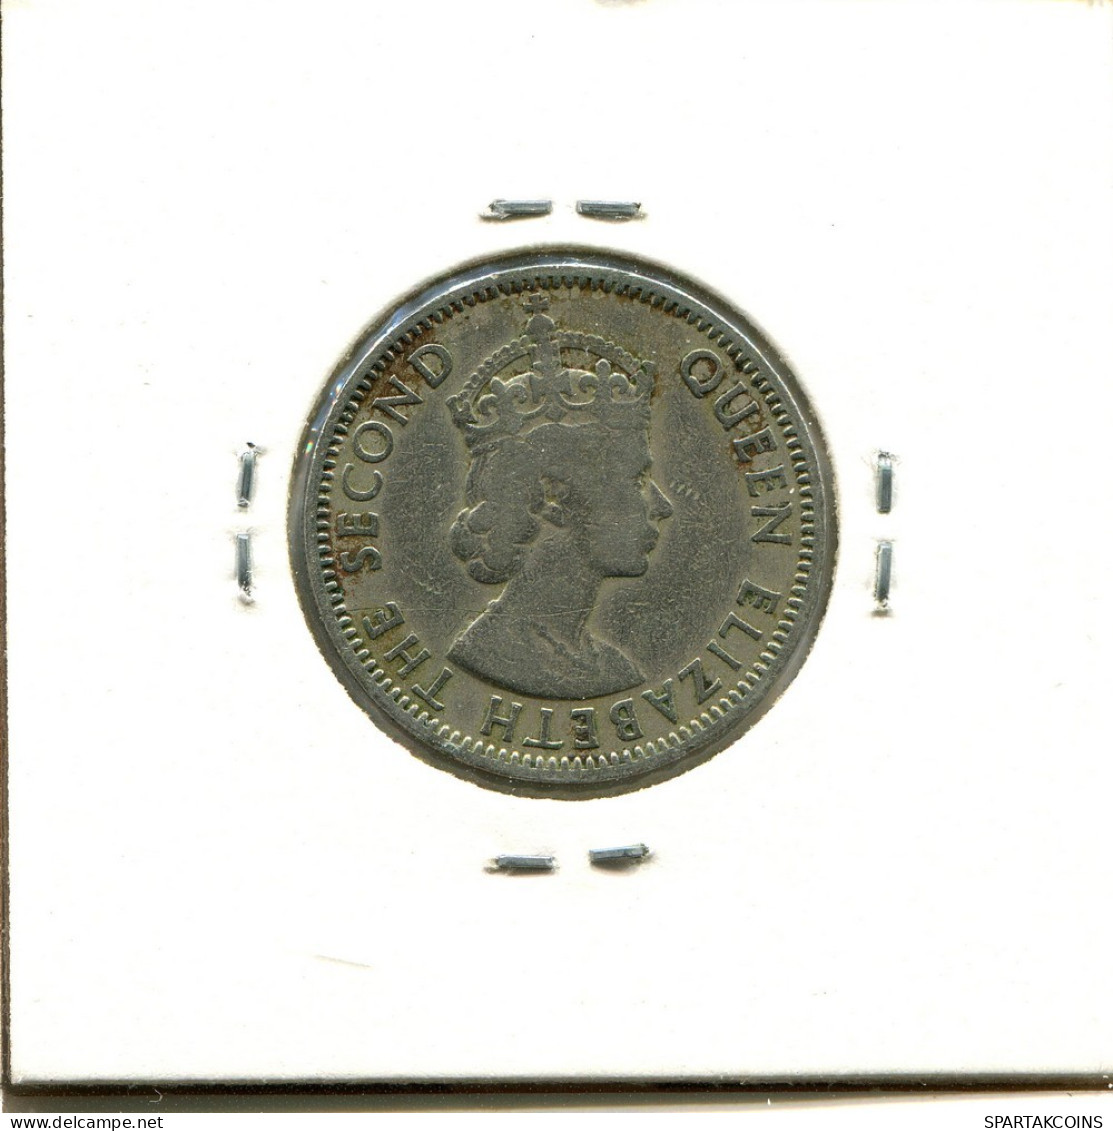 50 MILS 1955 CYPRUS Coin #AZ878.U.A - Cyprus